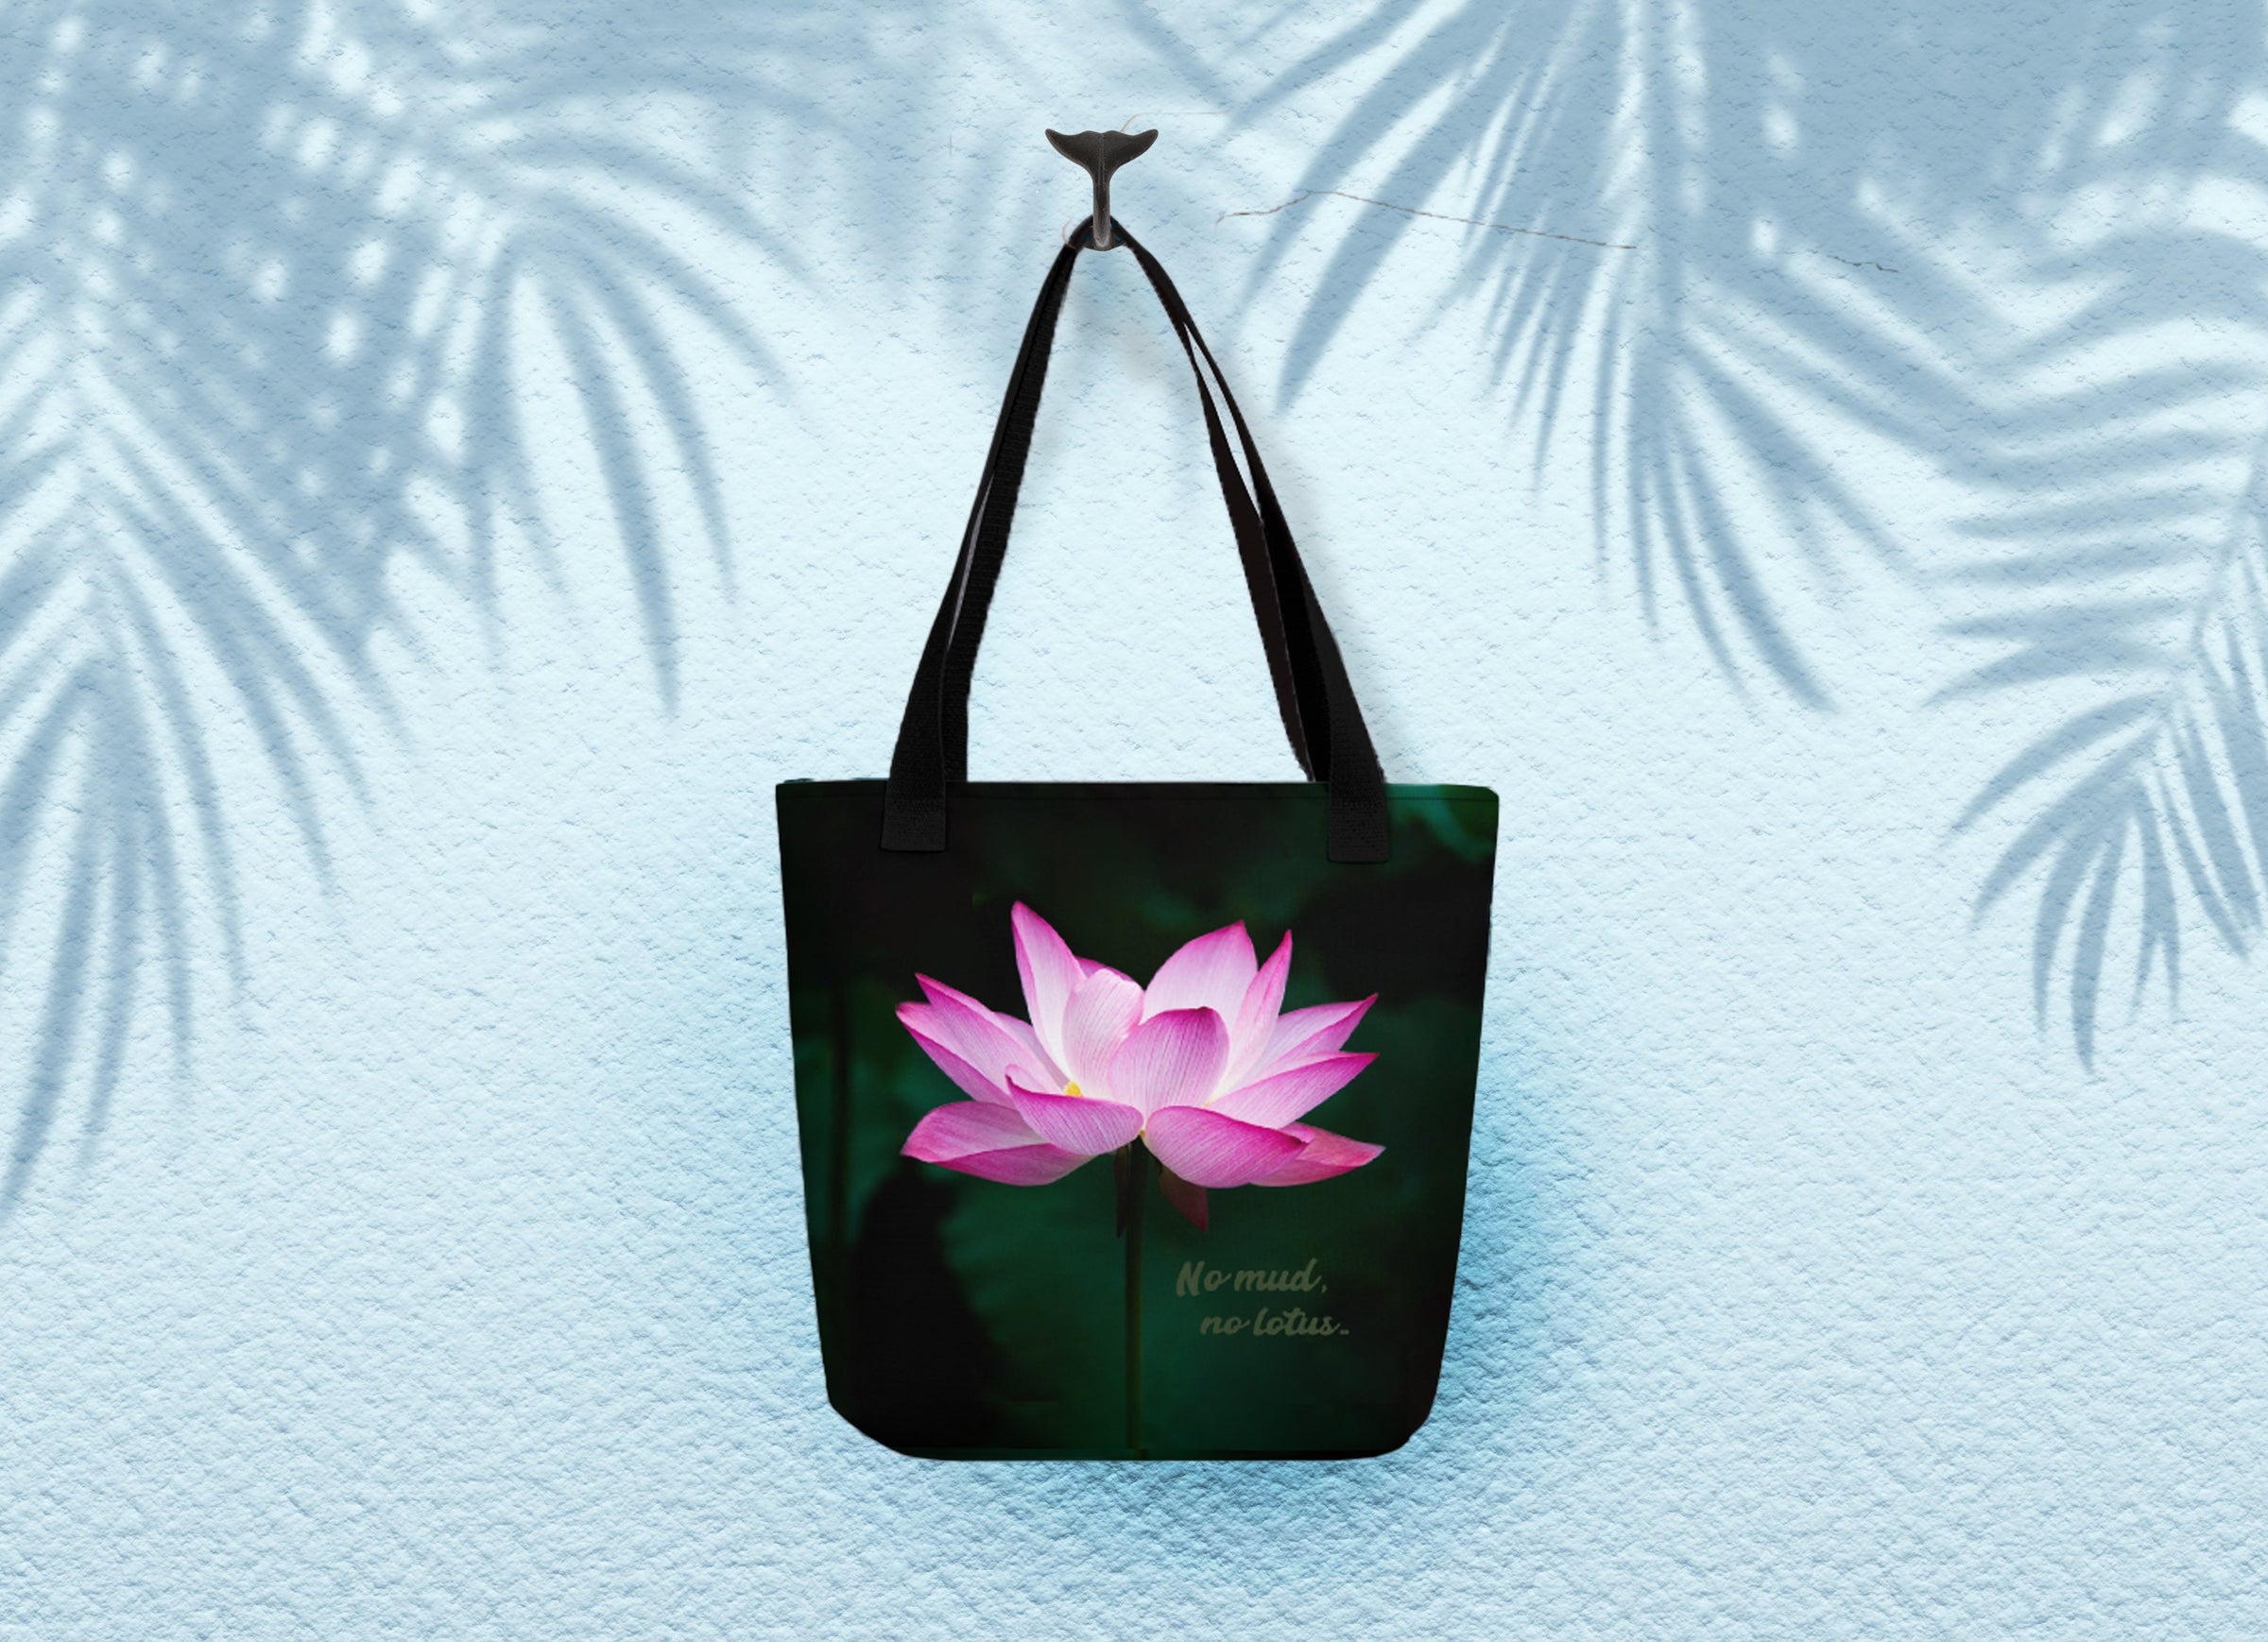 No mud no lotus yoga tote bag by Surfersandyogis